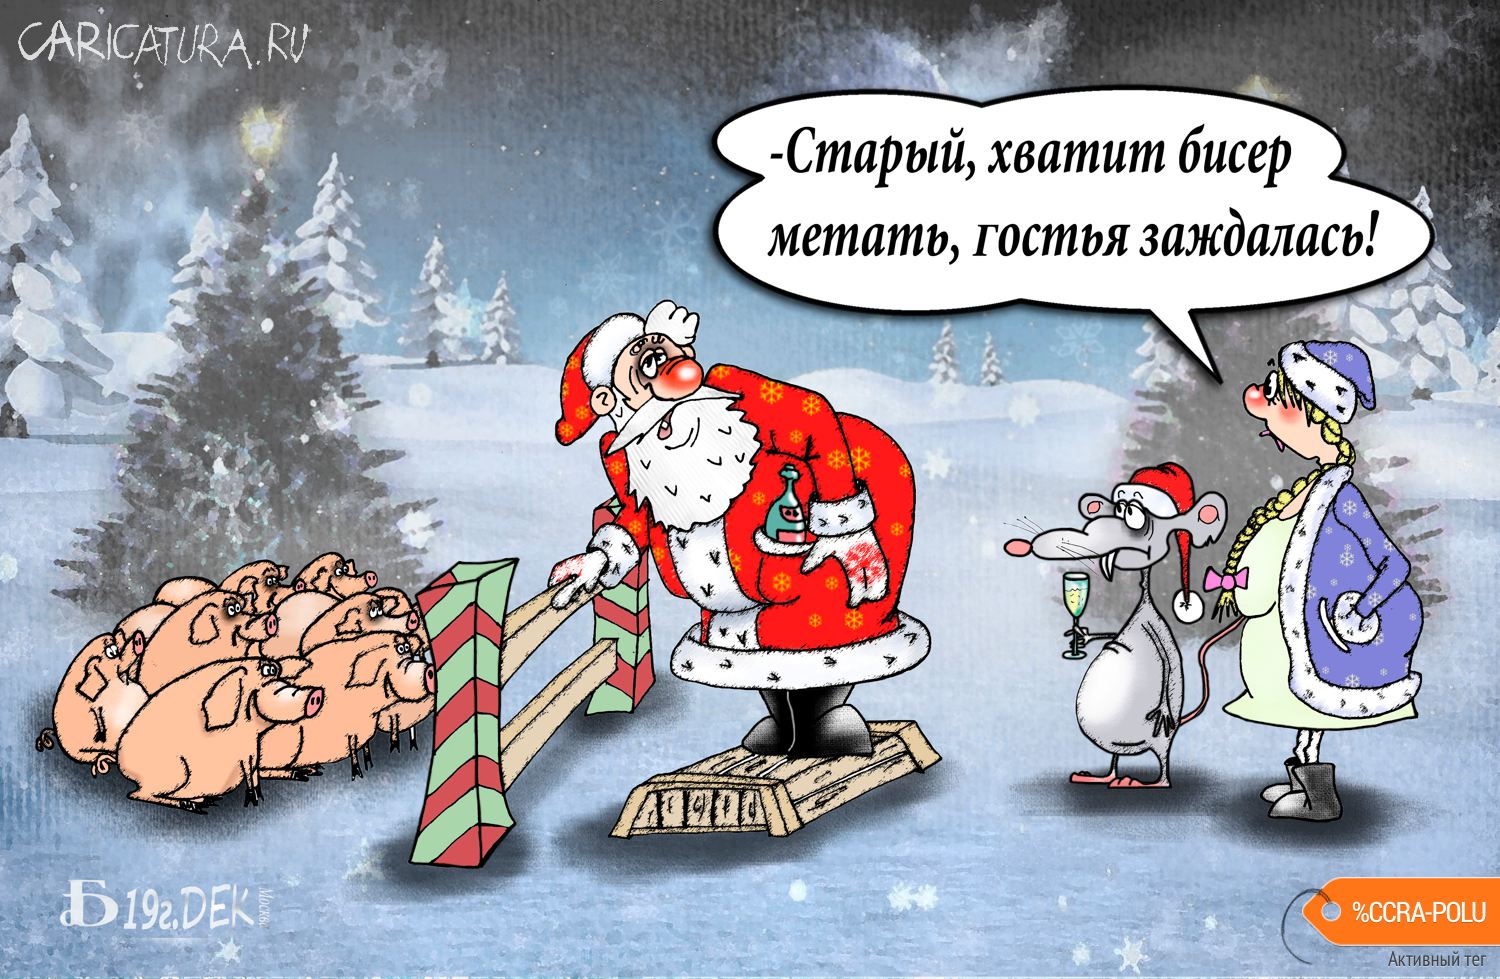 Карикатура "Про мечение", Борис Демин